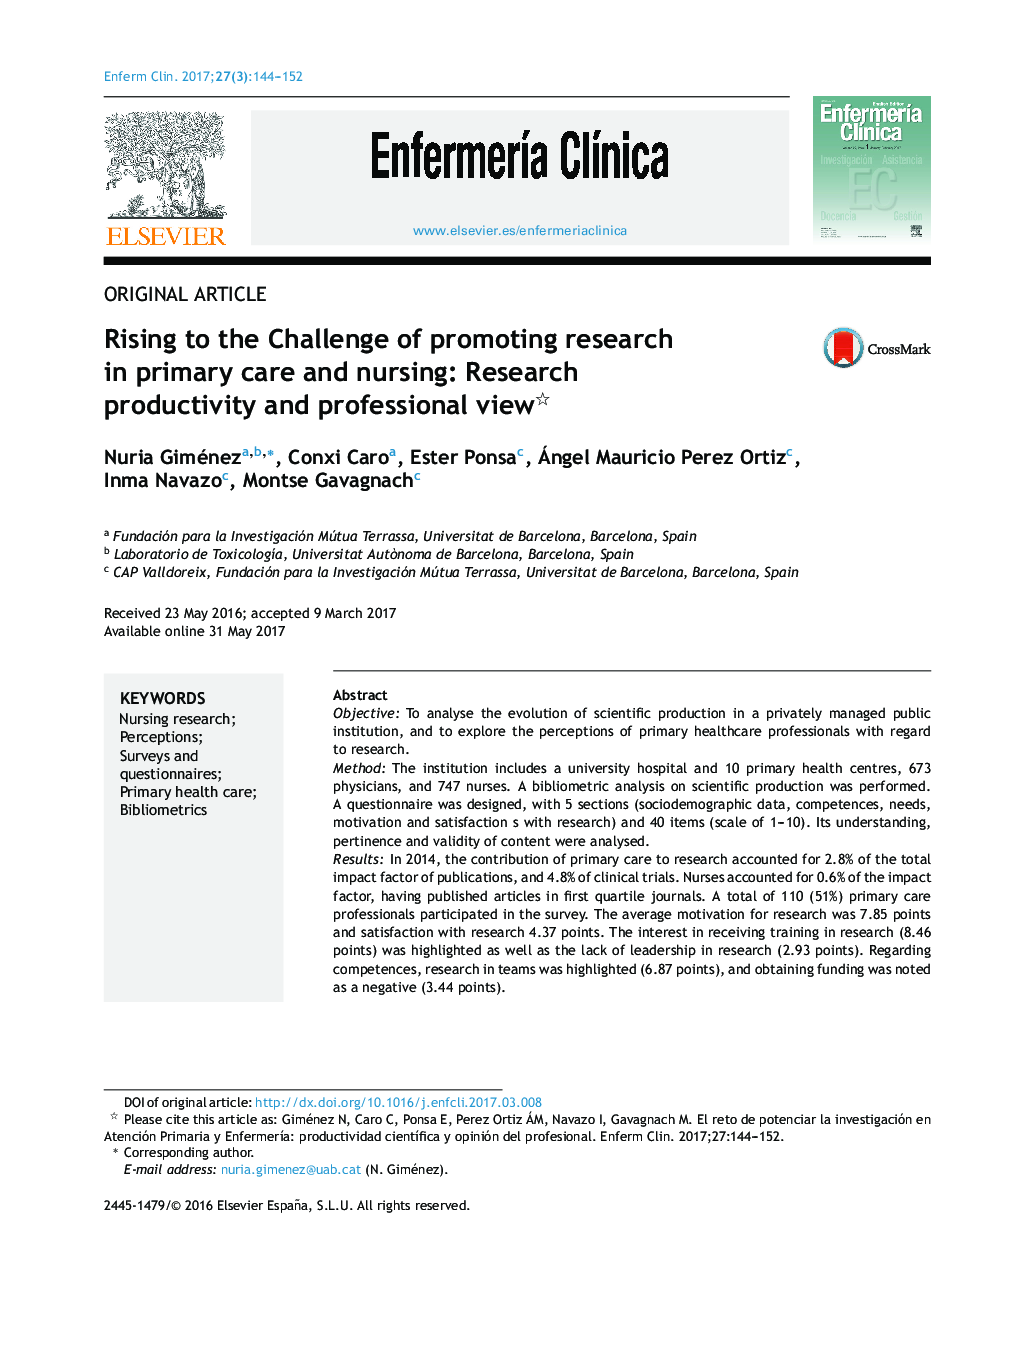 افزایش چالش ترویج تحقیق در مراقبت های اولیه و پرستاری: بهره وری تحقیق و دیدگاه حرفه ای 